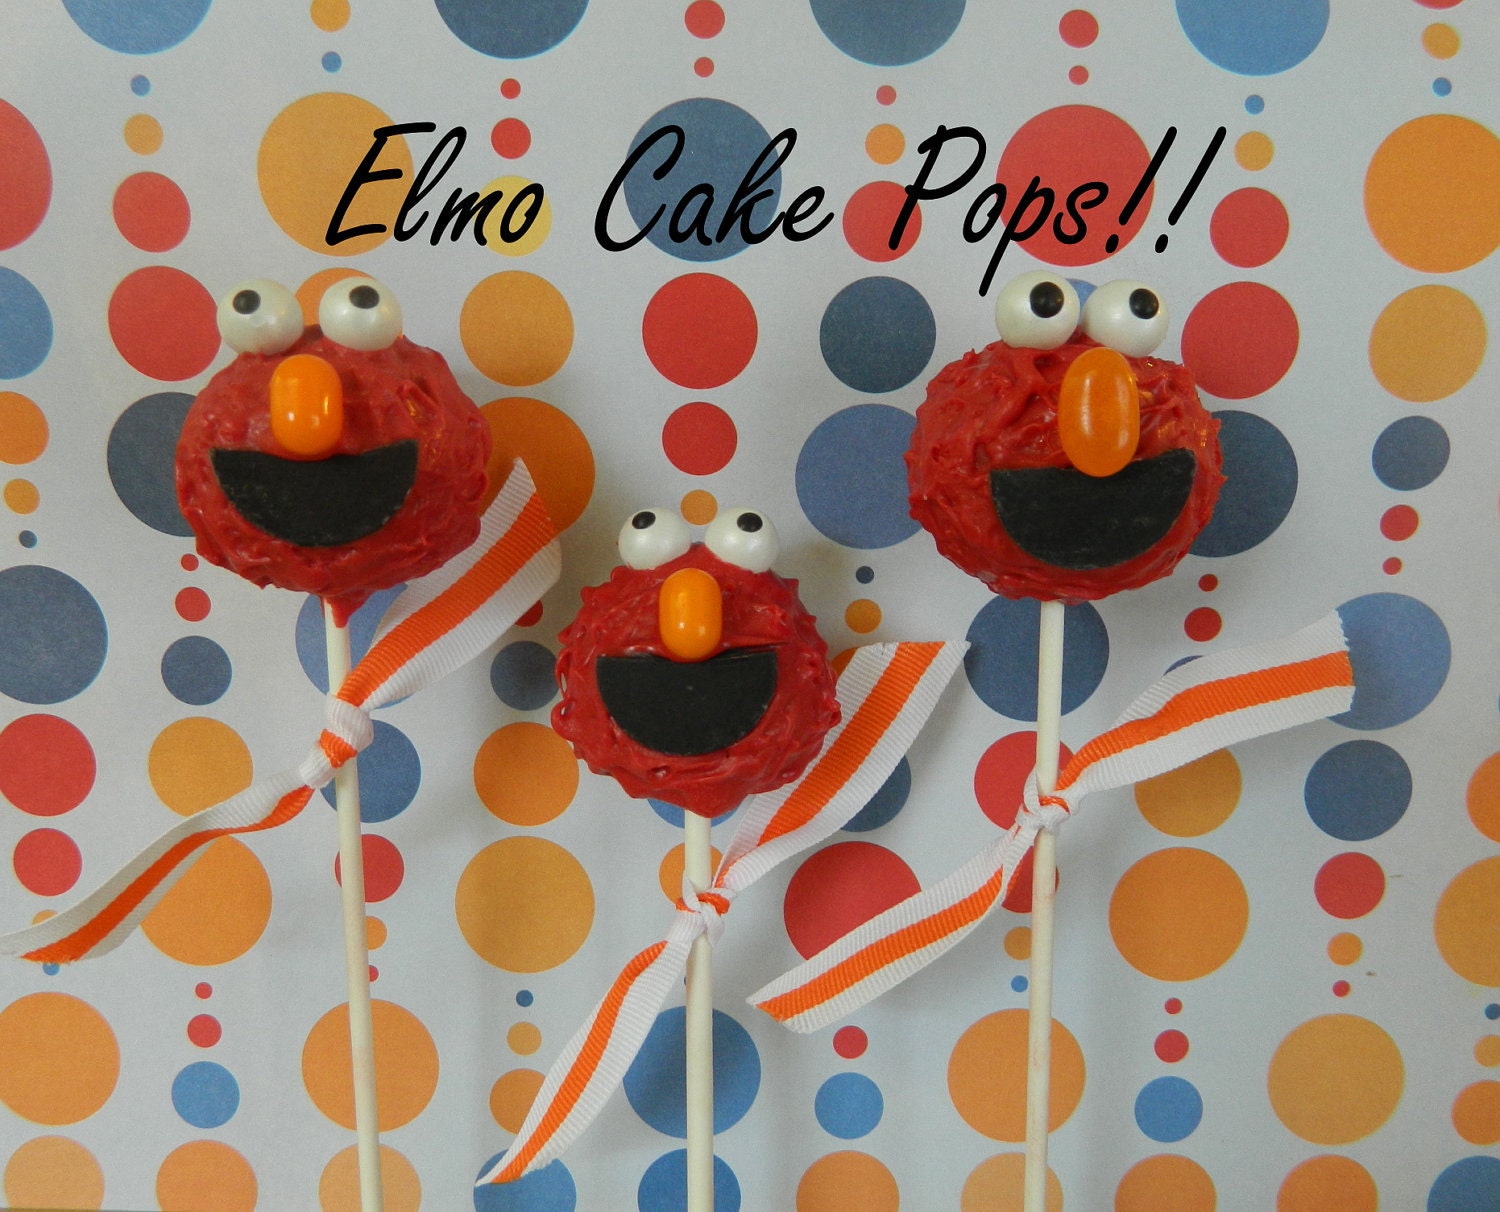 How To Make Elmo Cake Pops